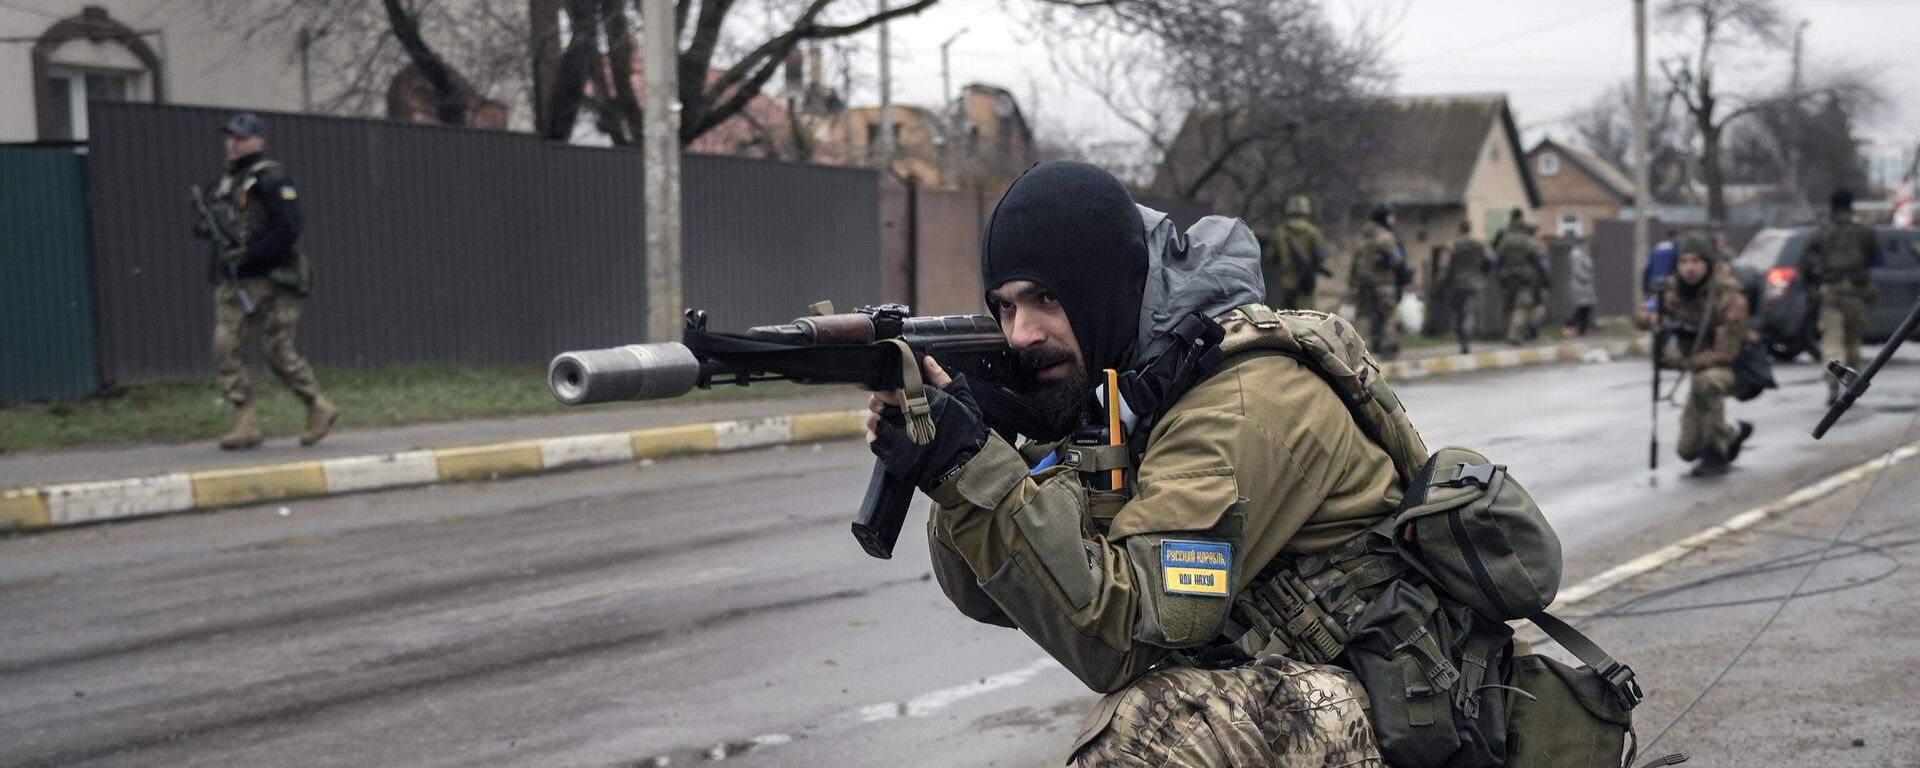 Украинские военнослужащие в пригороде Киева Буче, 2 апреля 2022 года - Sputnik Латвия, 1920, 18.04.2022